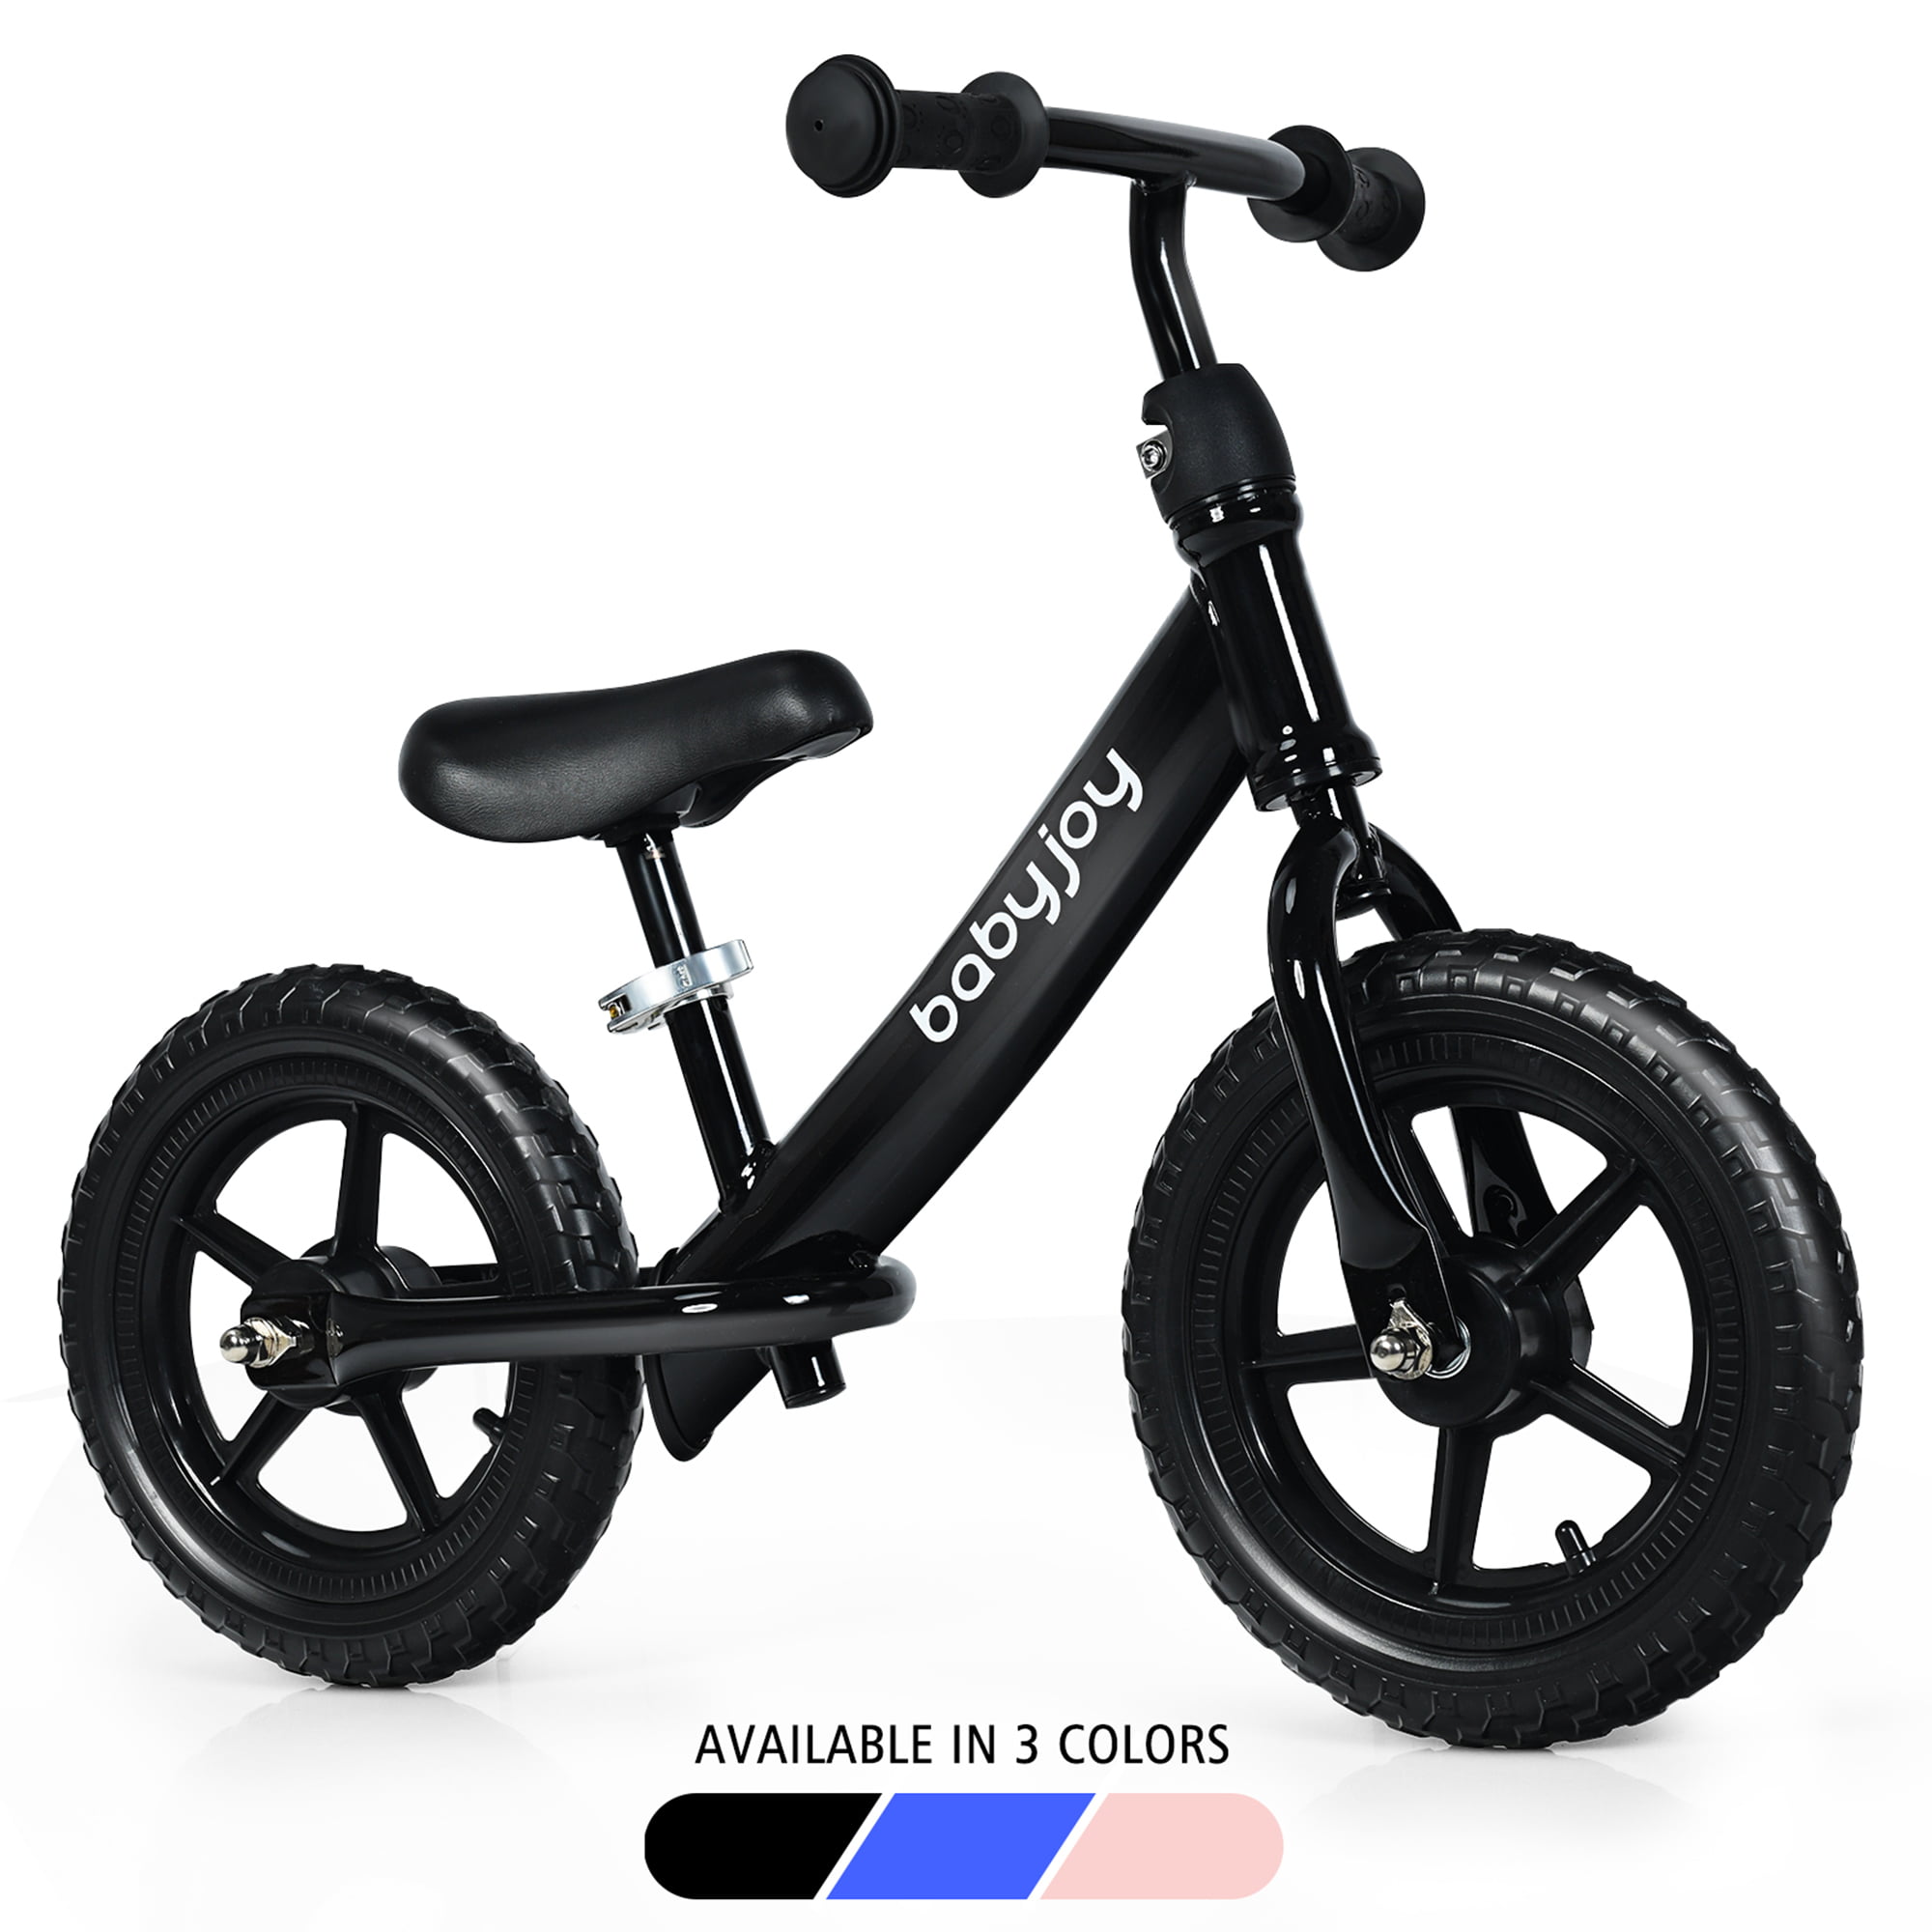 12” Kids Balance Bike No Pedal Sport Training Bicycle w/ Adjustable Seat Pink 